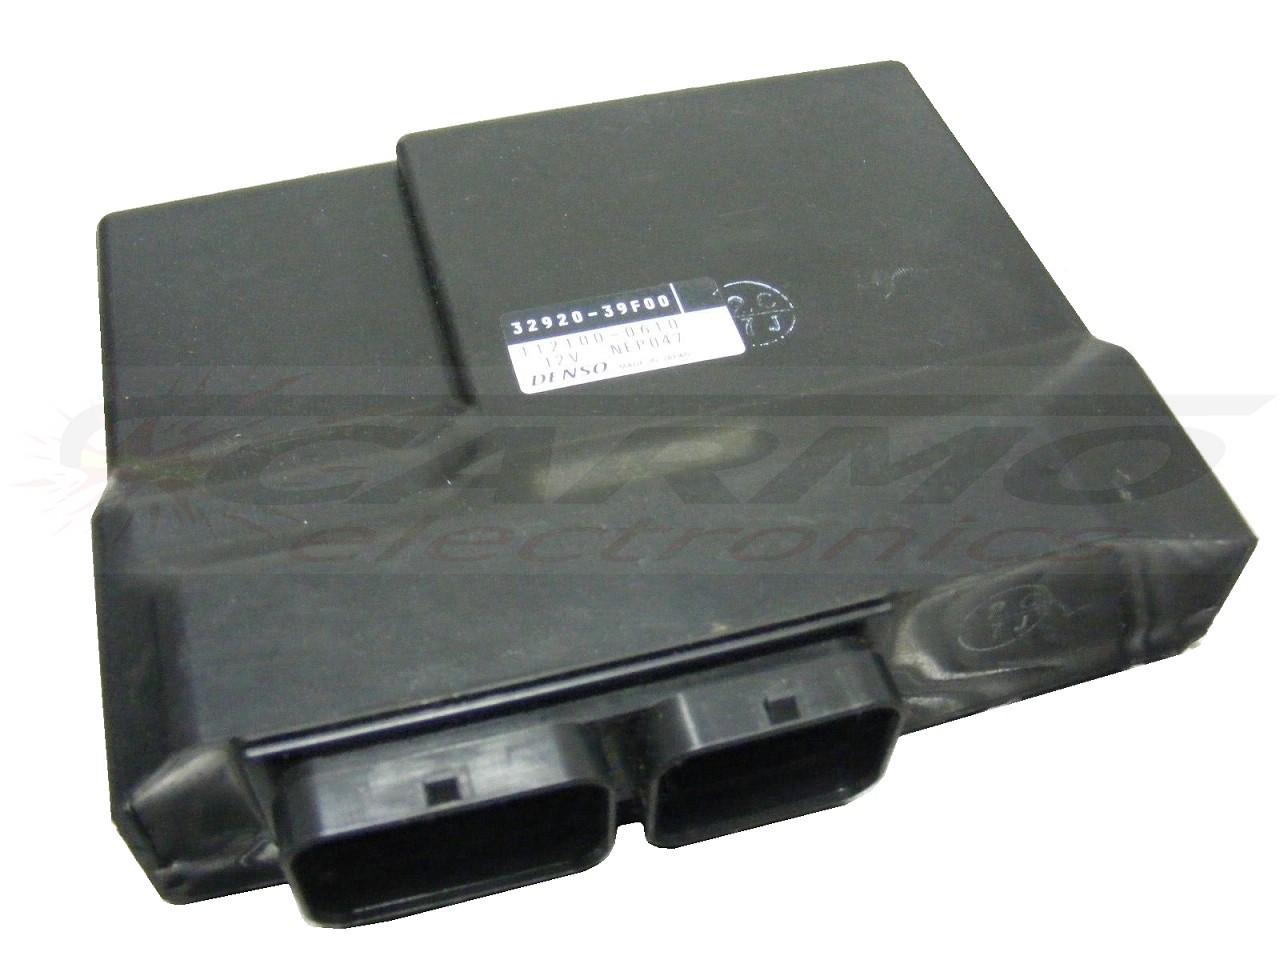 GSXR600 GSX-R 600 ECU ECM CDI controlador de caixa preta de computador (32920-39F00 -39F20 -39F30)